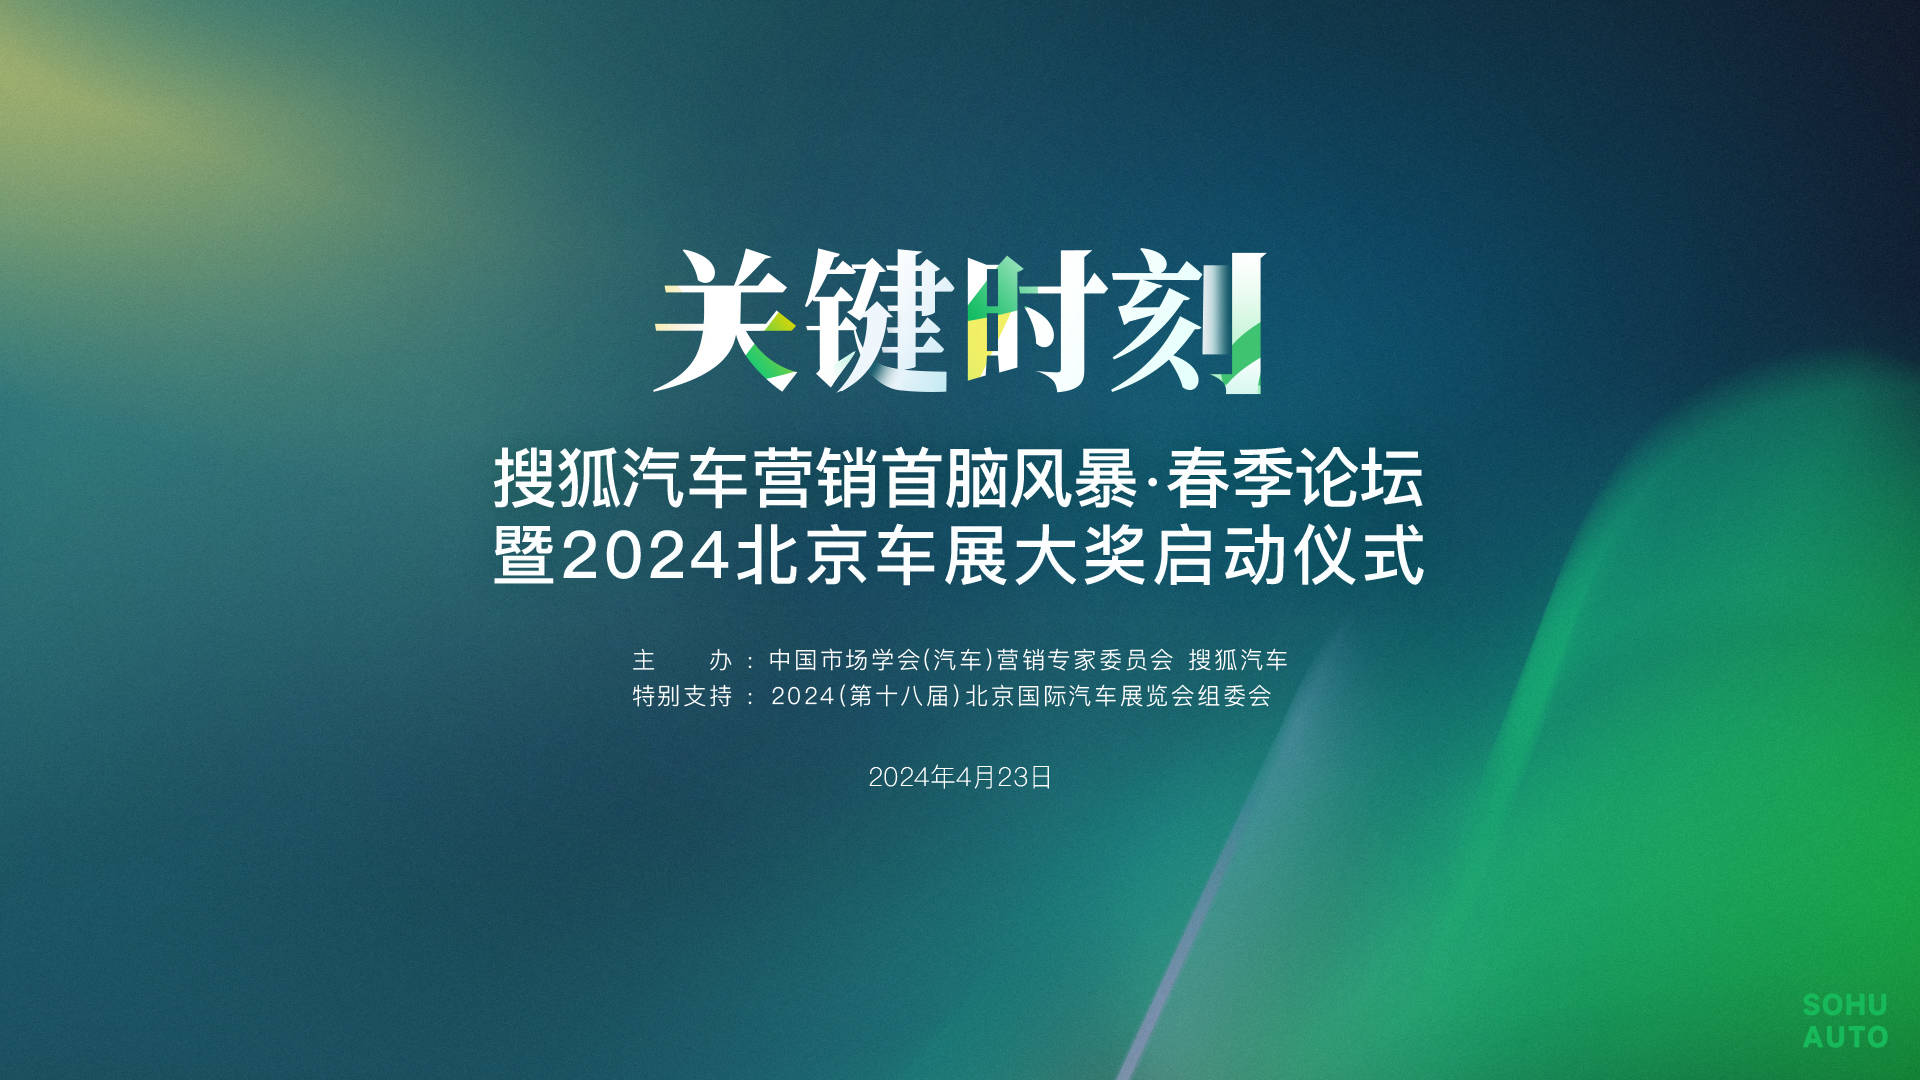 关键时刻!搜狐汽车营销首脑风暴·春季论坛暨2024北京车展大